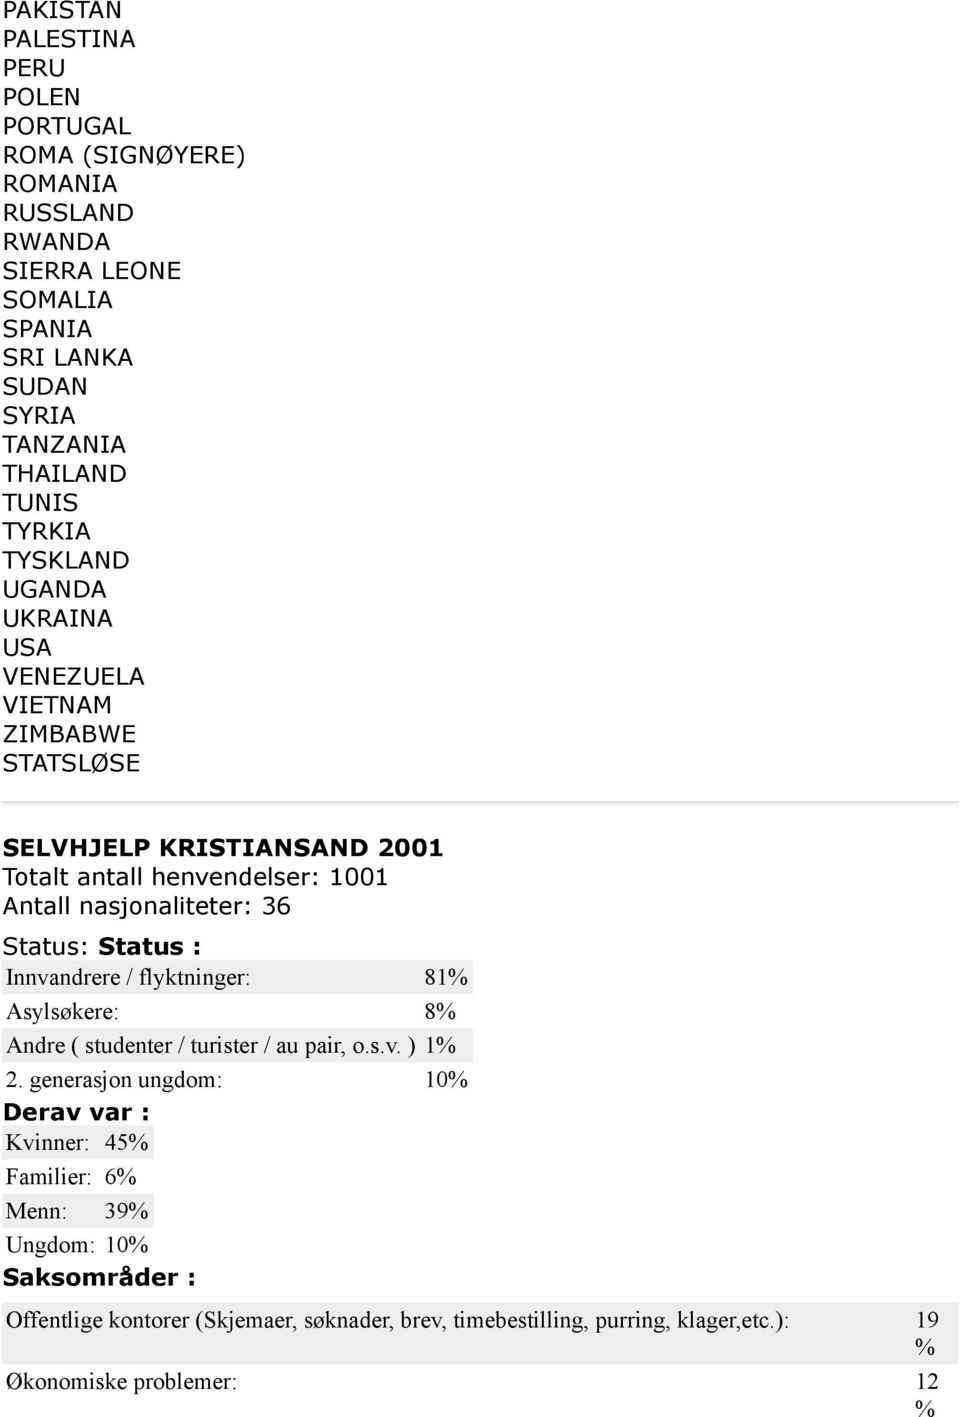 Status: Status : Innvandrere / flyktninger: 81 Asylsøkere: 8 Andre ( studenter / turister / au pair, o.s.v. ) 1 2.